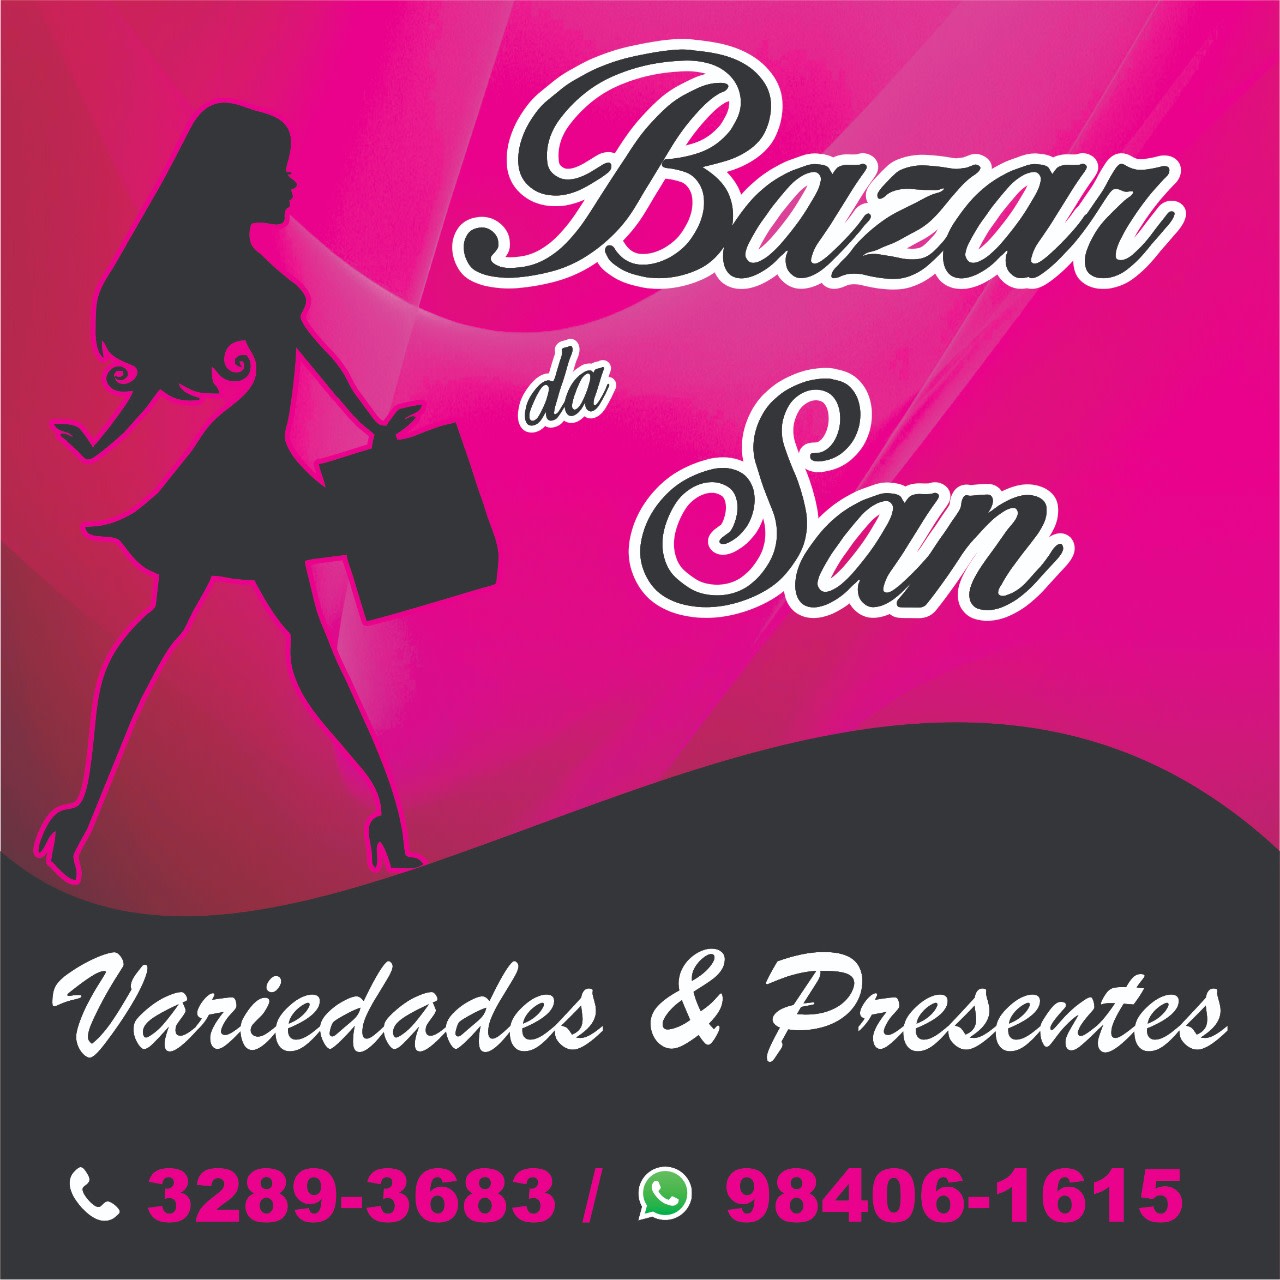 Bazar da San Variedades & Presentes